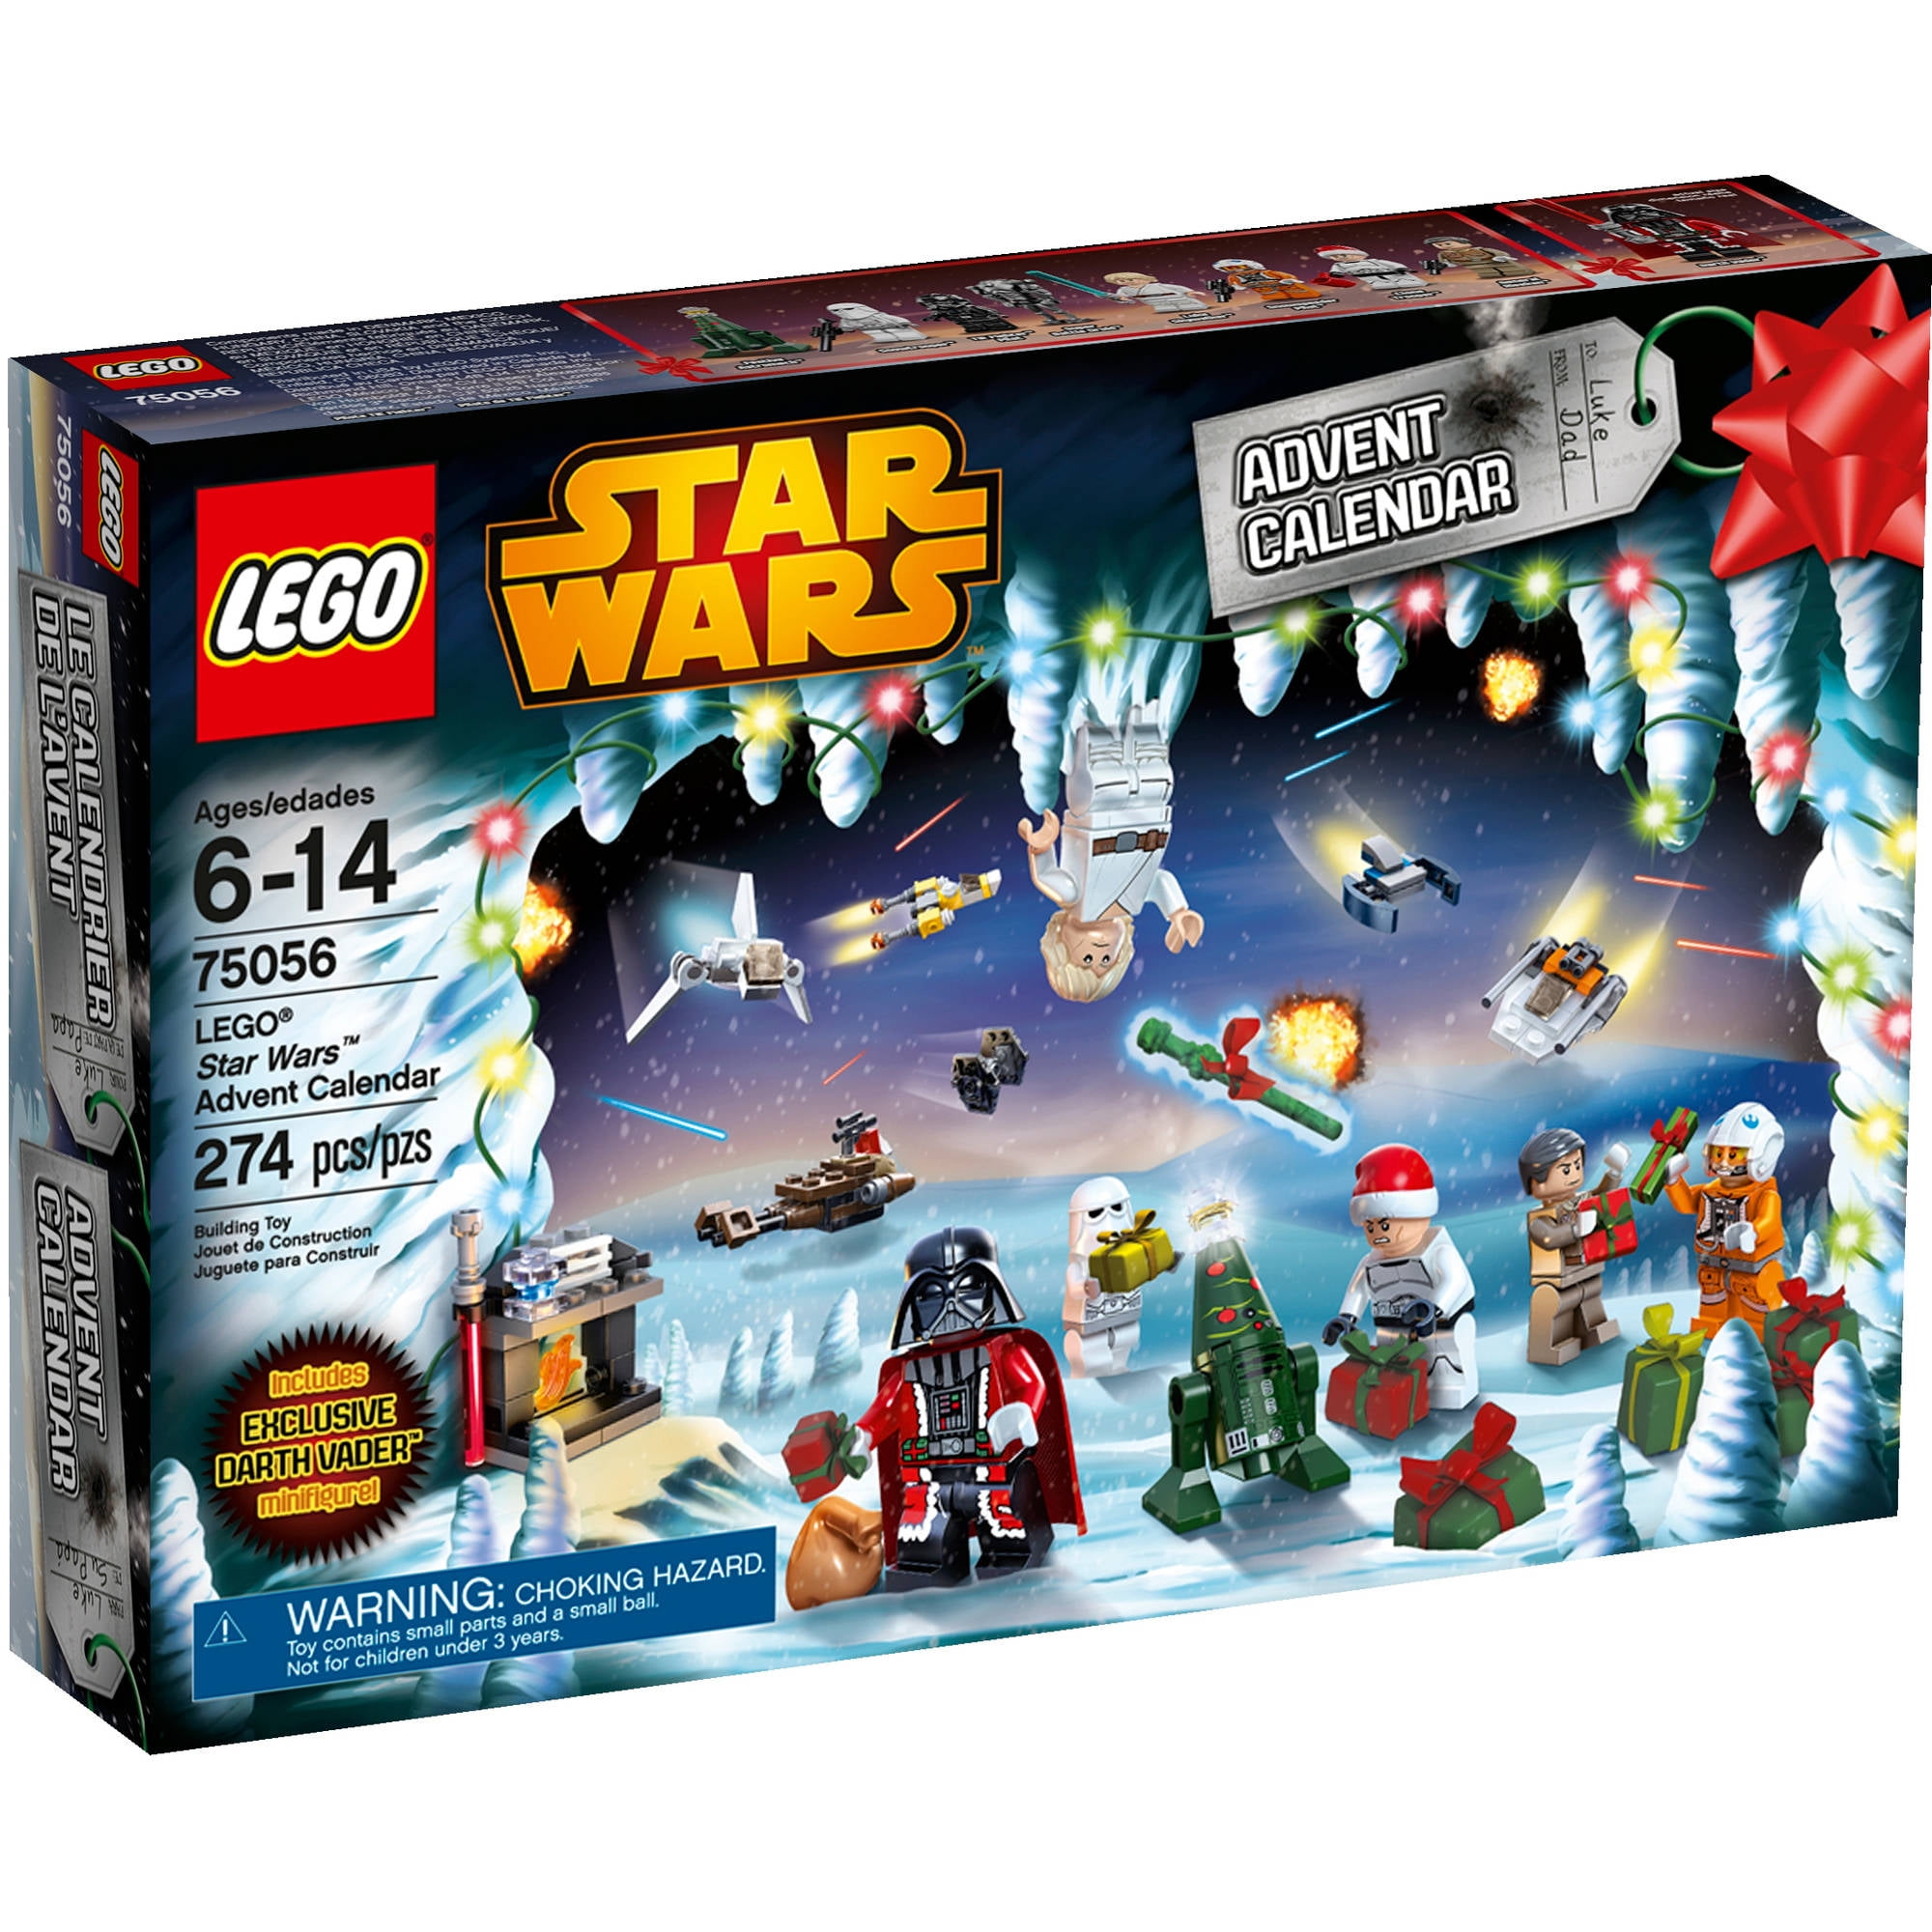 LEGO 75279 Star Wars Calendrier de l’Avent LEGO Star Wars 2020 mini jeu de Construction de Noël avec des Vaisseaux et des personnages emblématiques